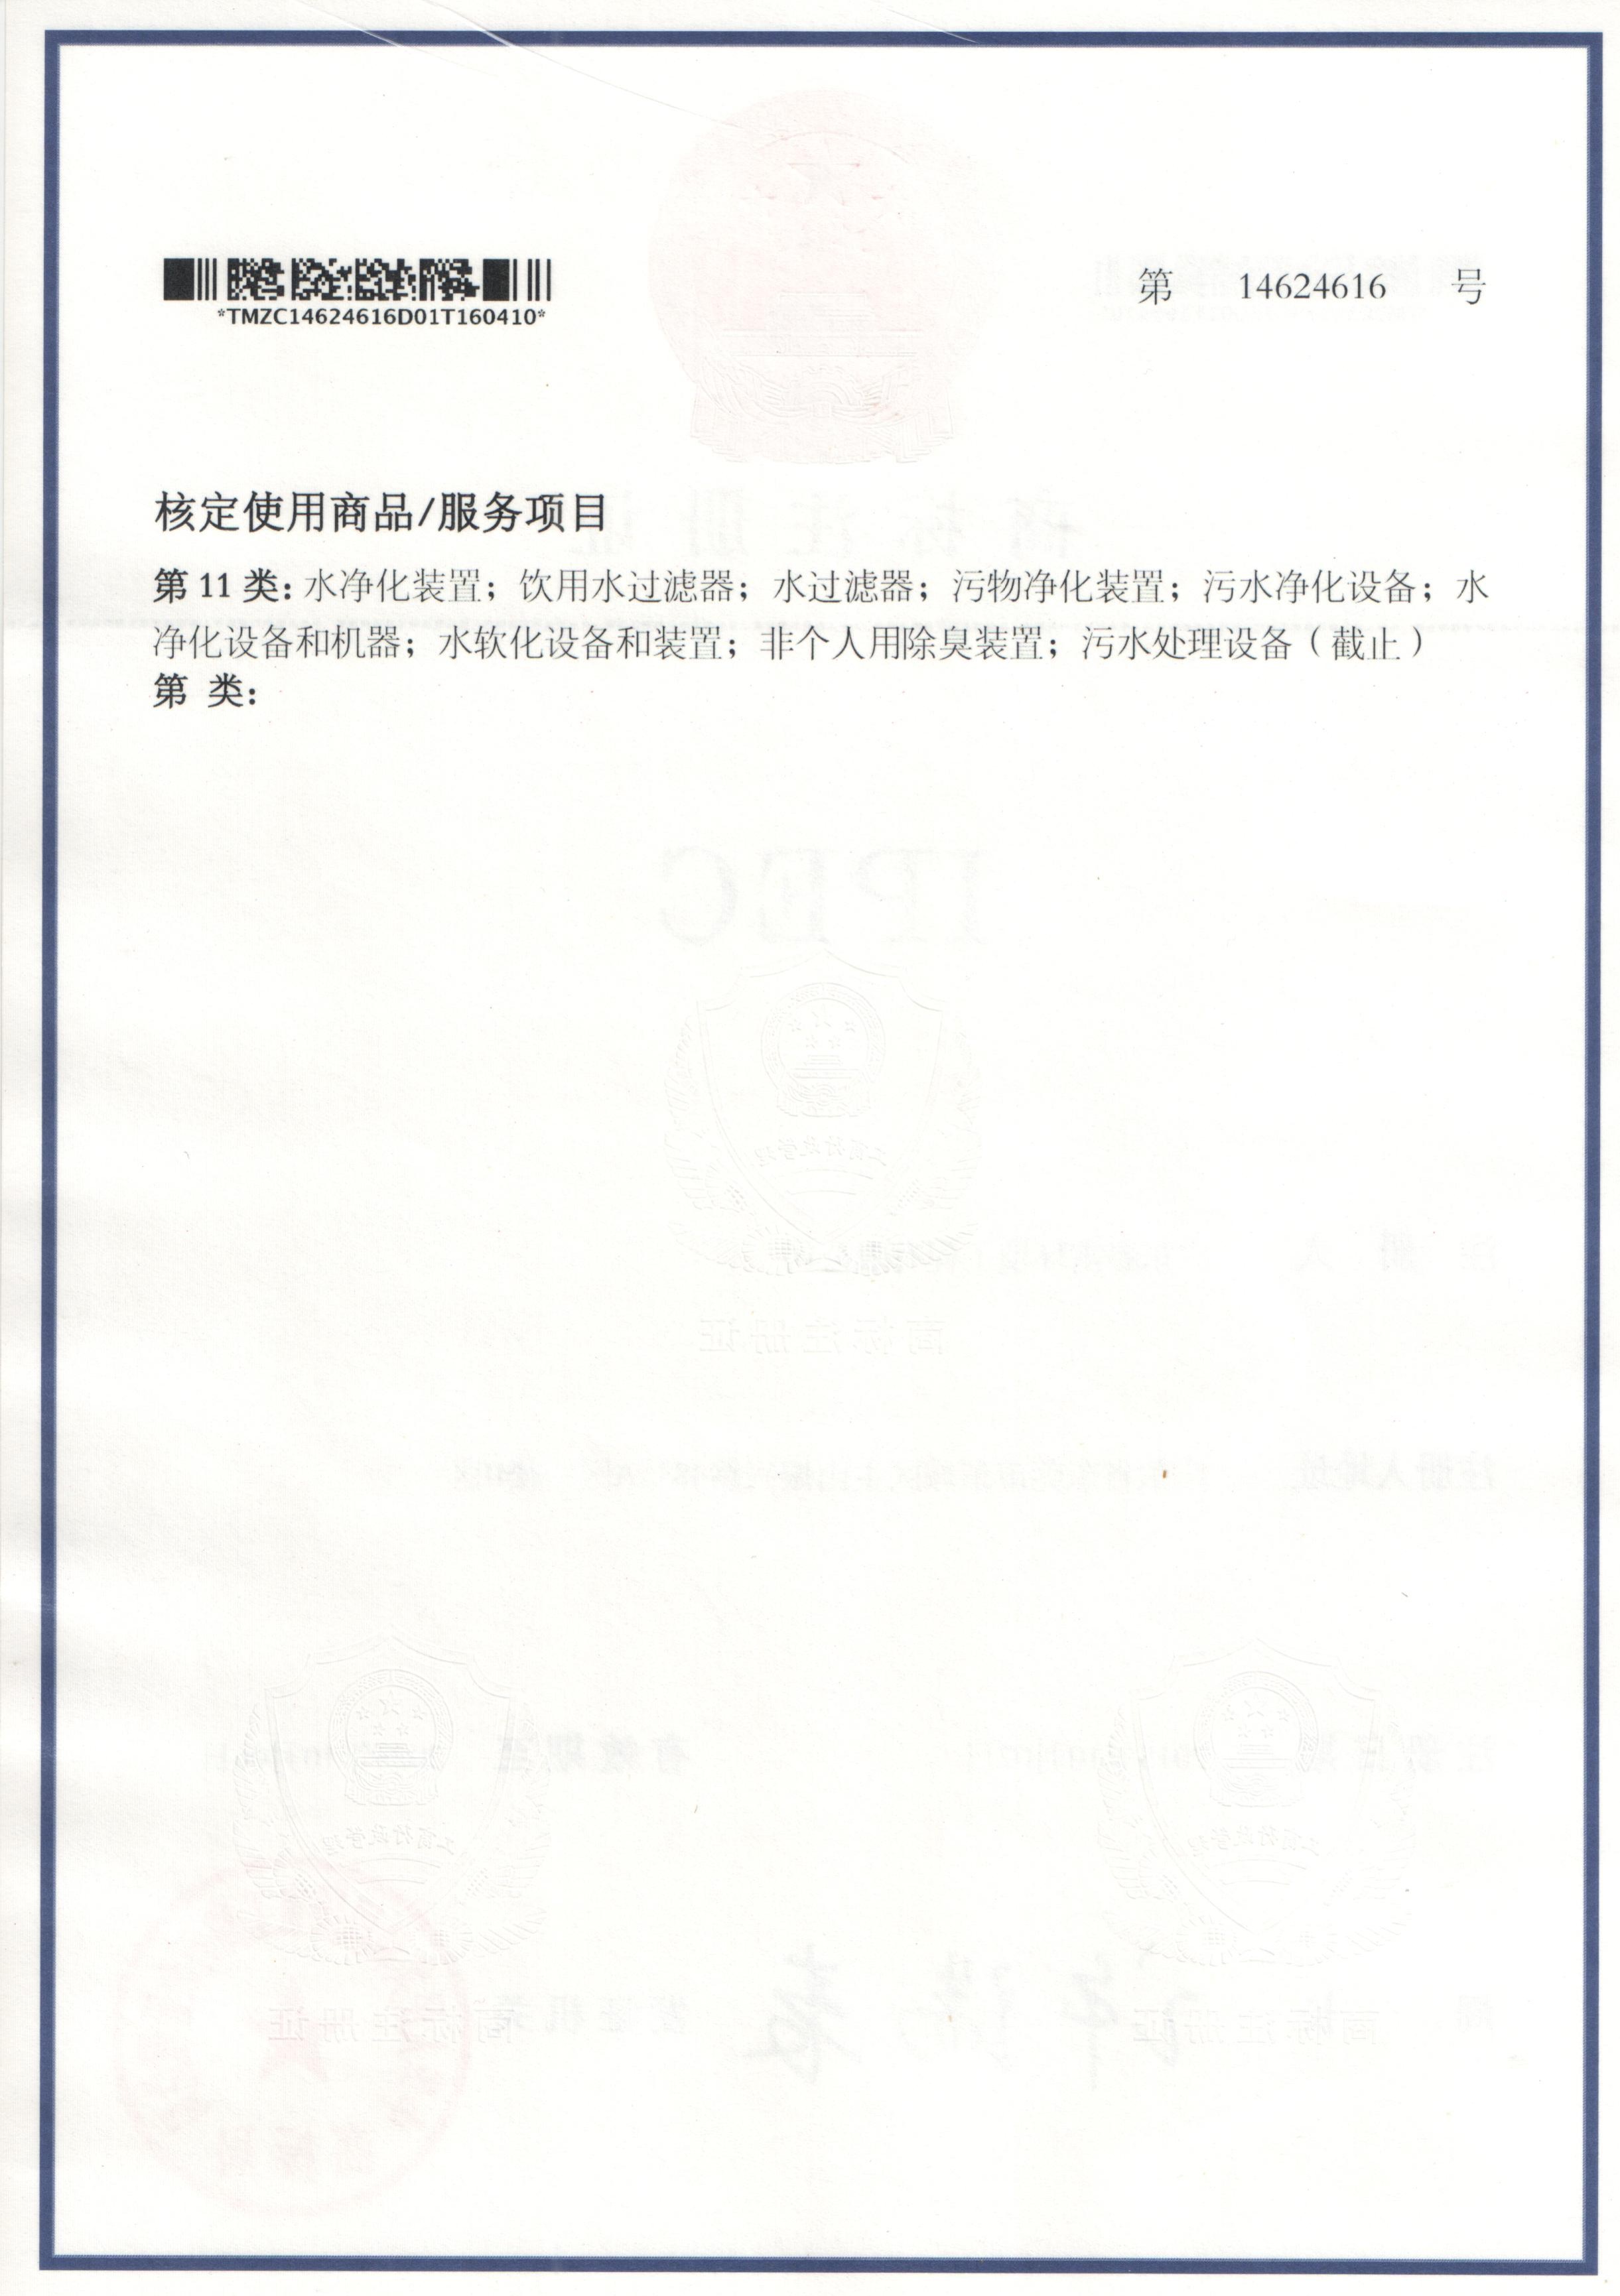 春雷IPEC-注册商标证书背面